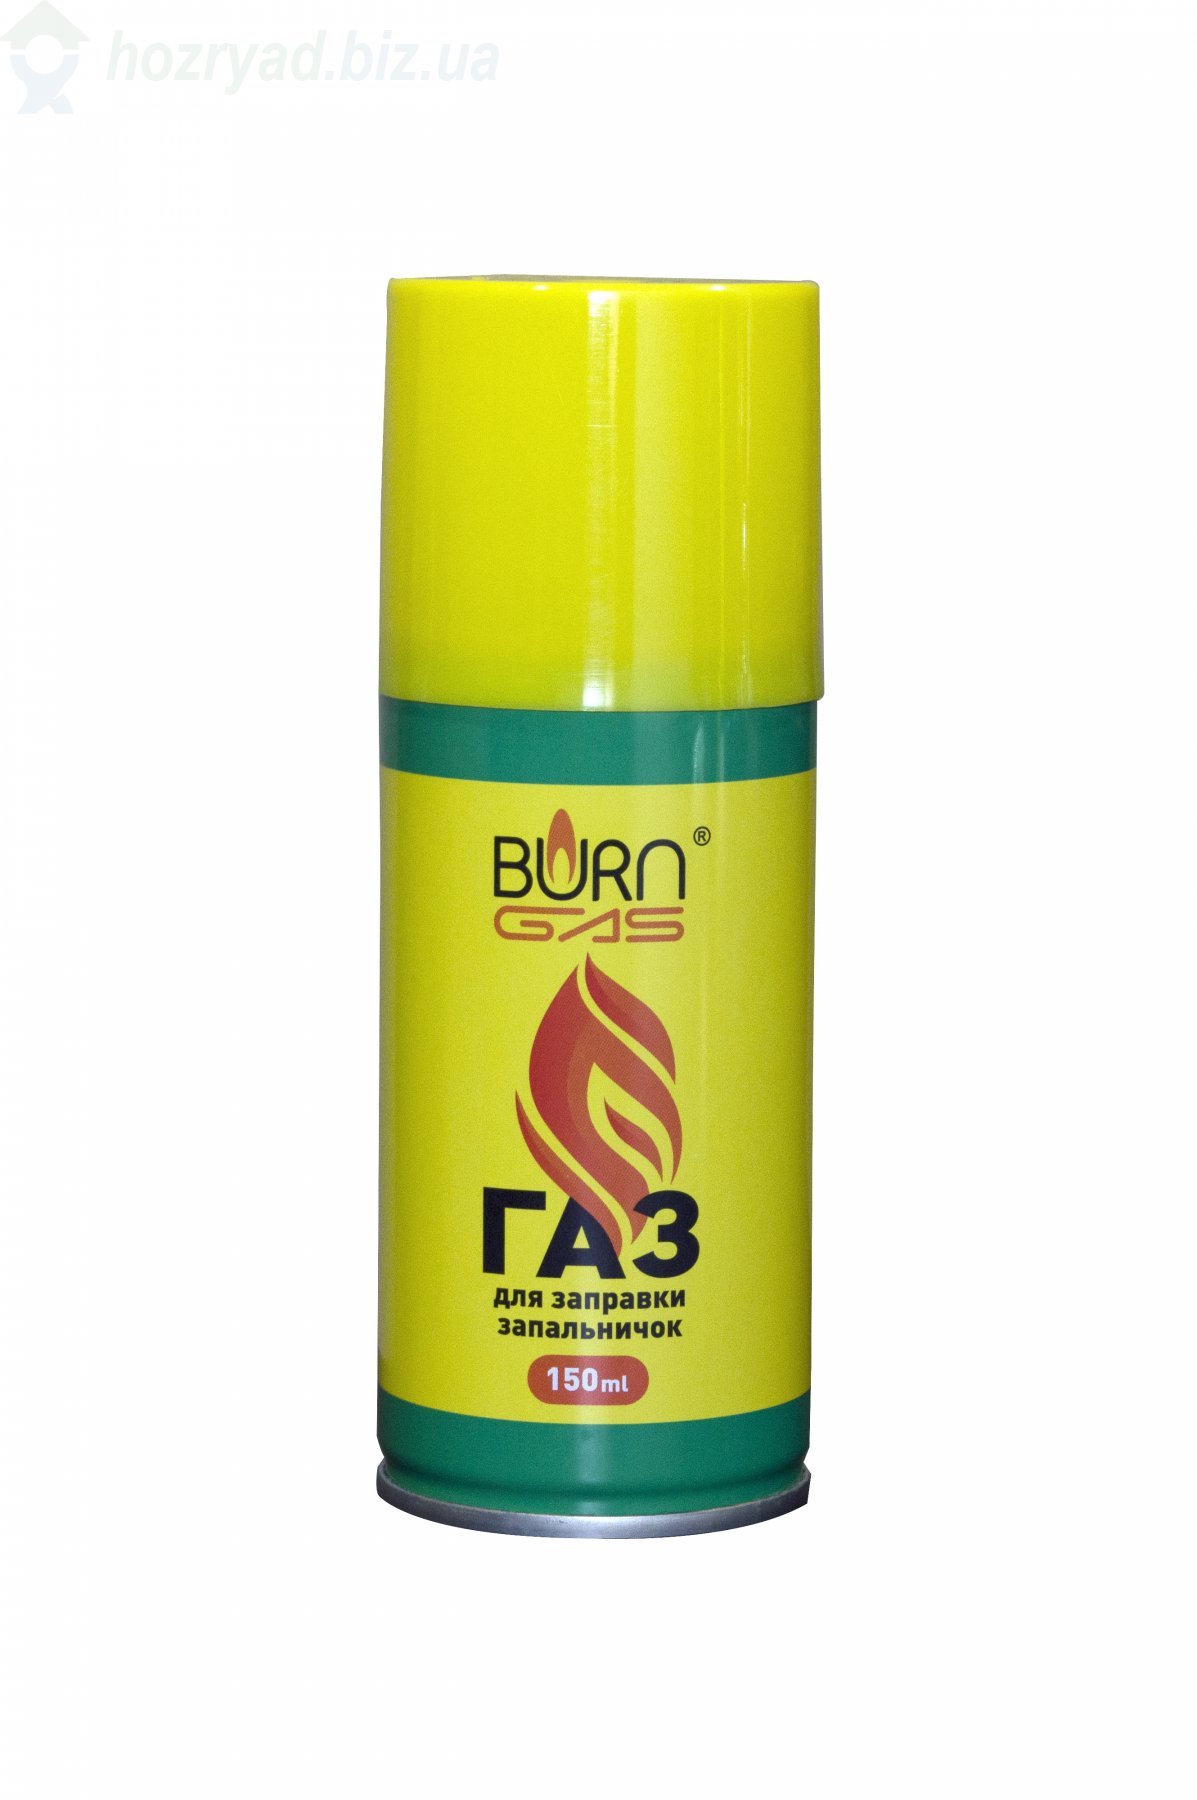     "Burn Gas" 150 ml